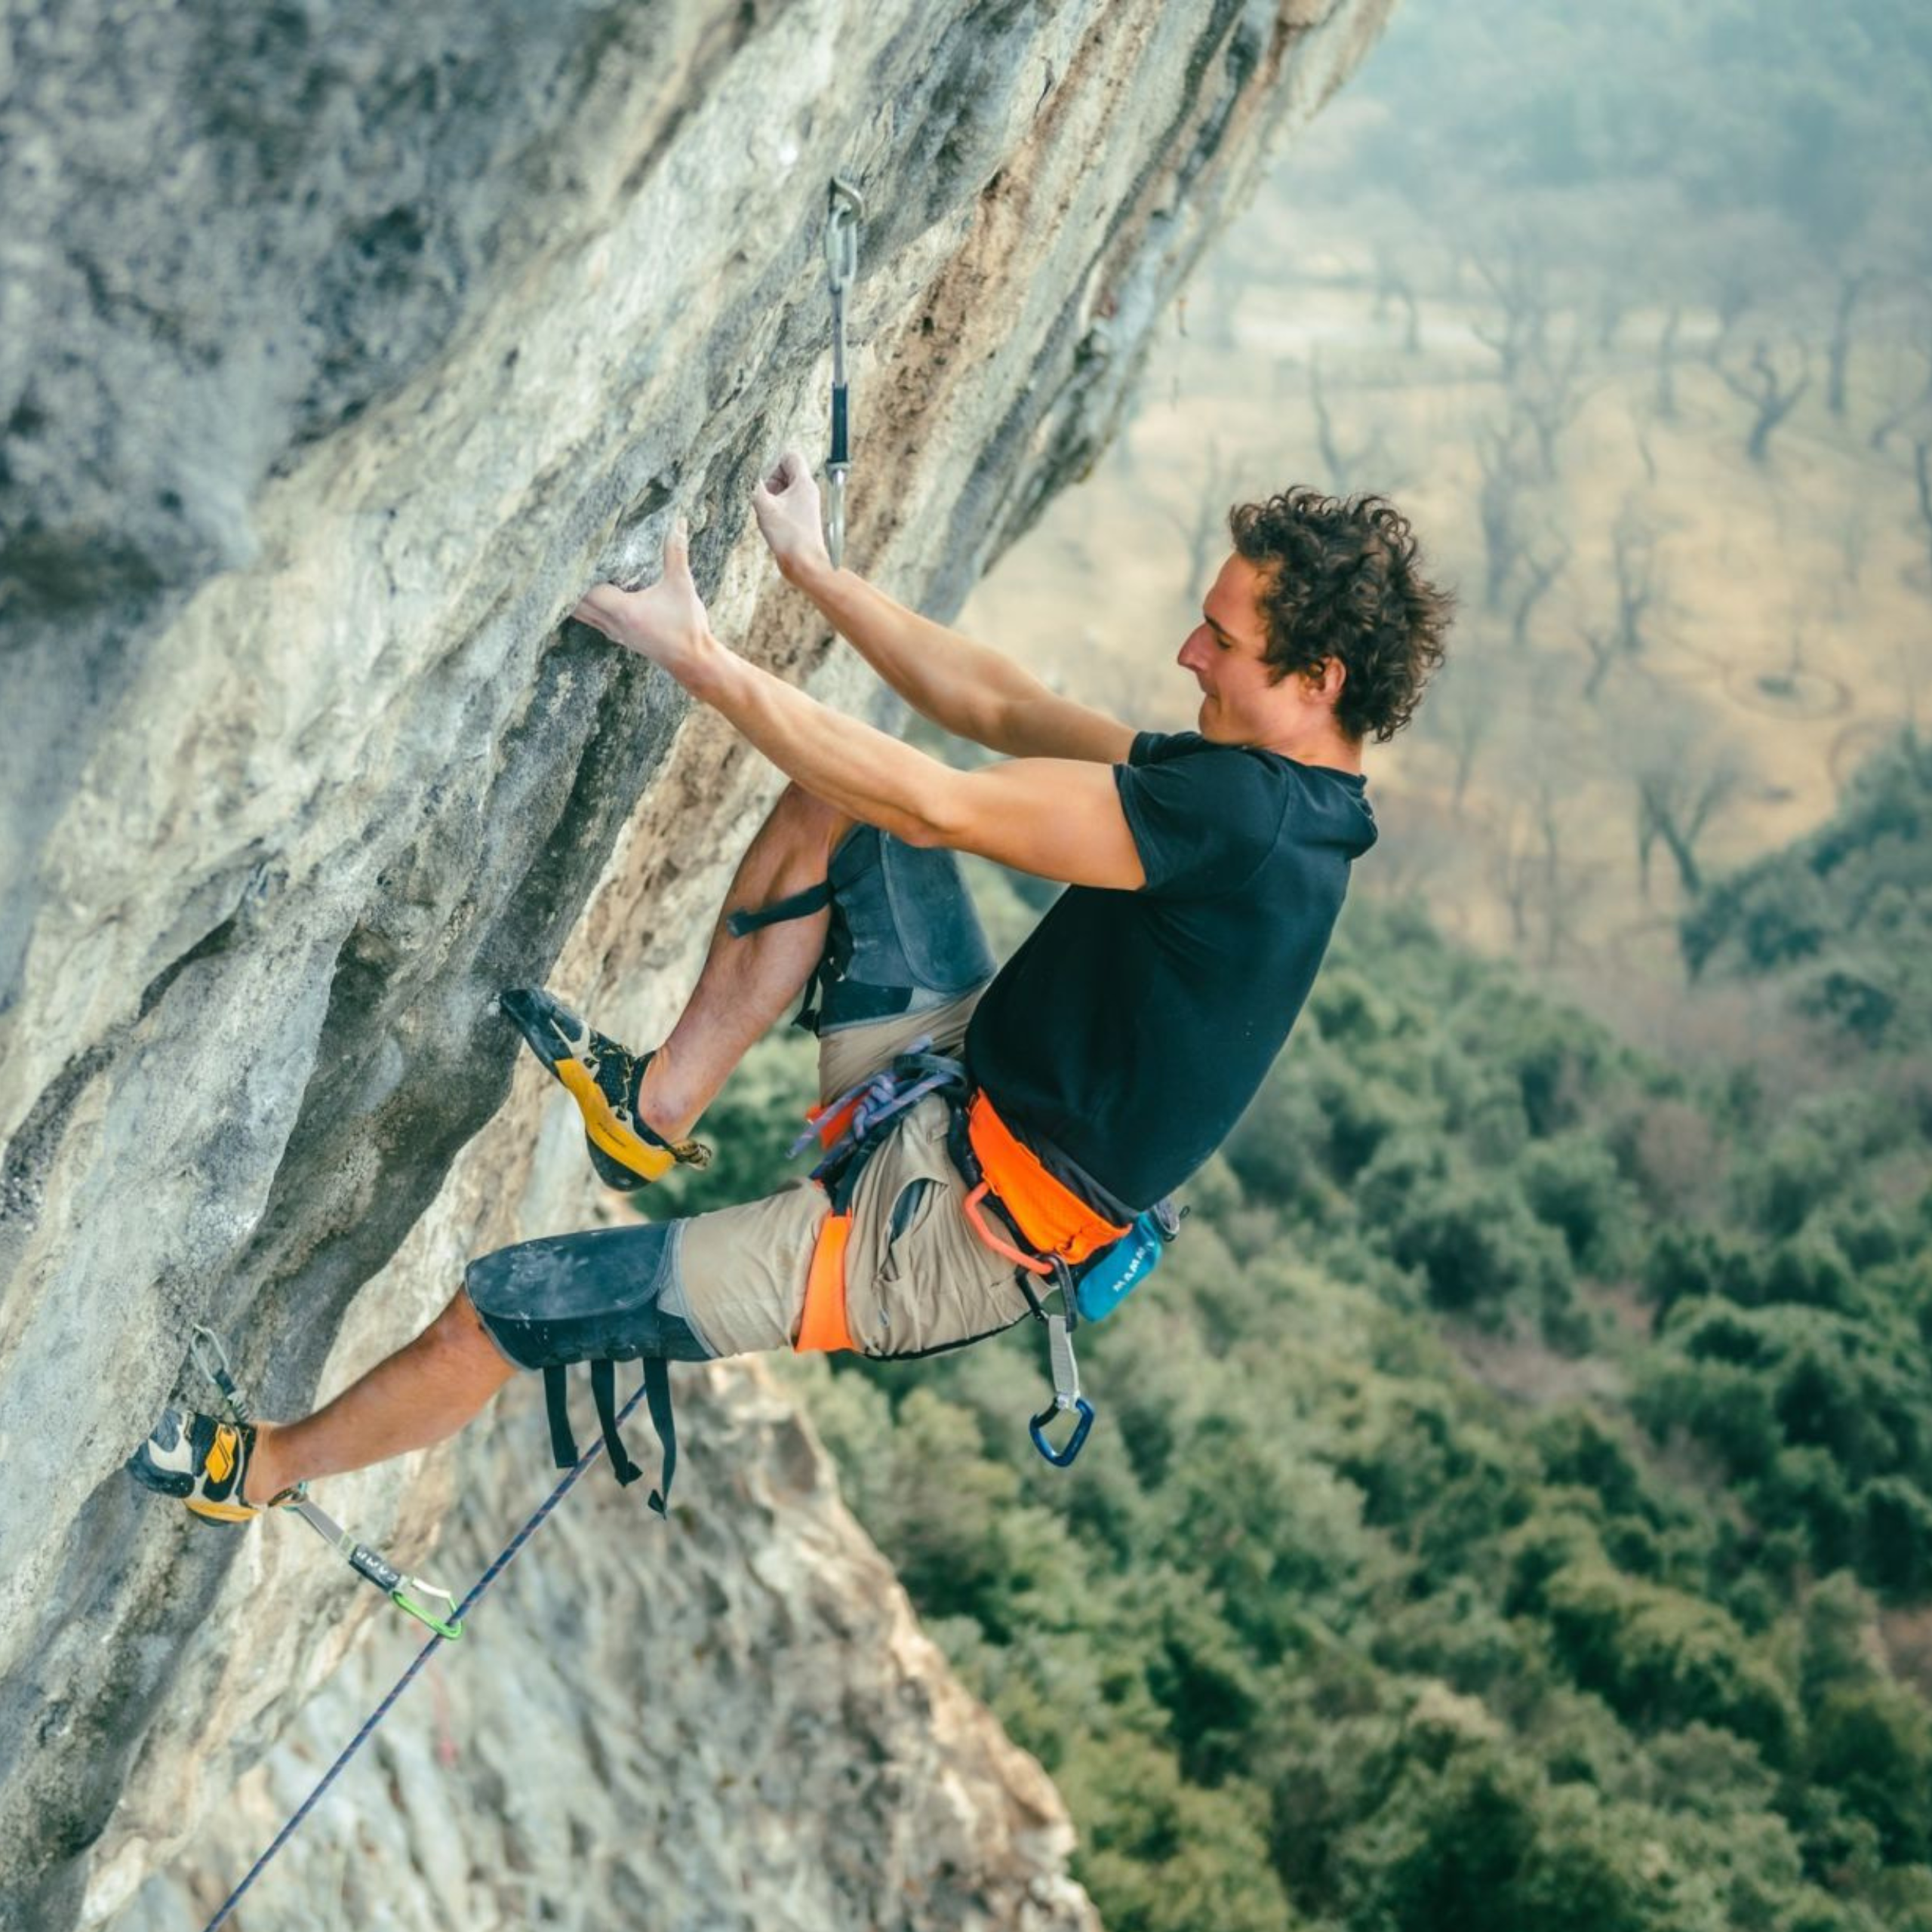 Man climbing mountain in LaSportiva shoes